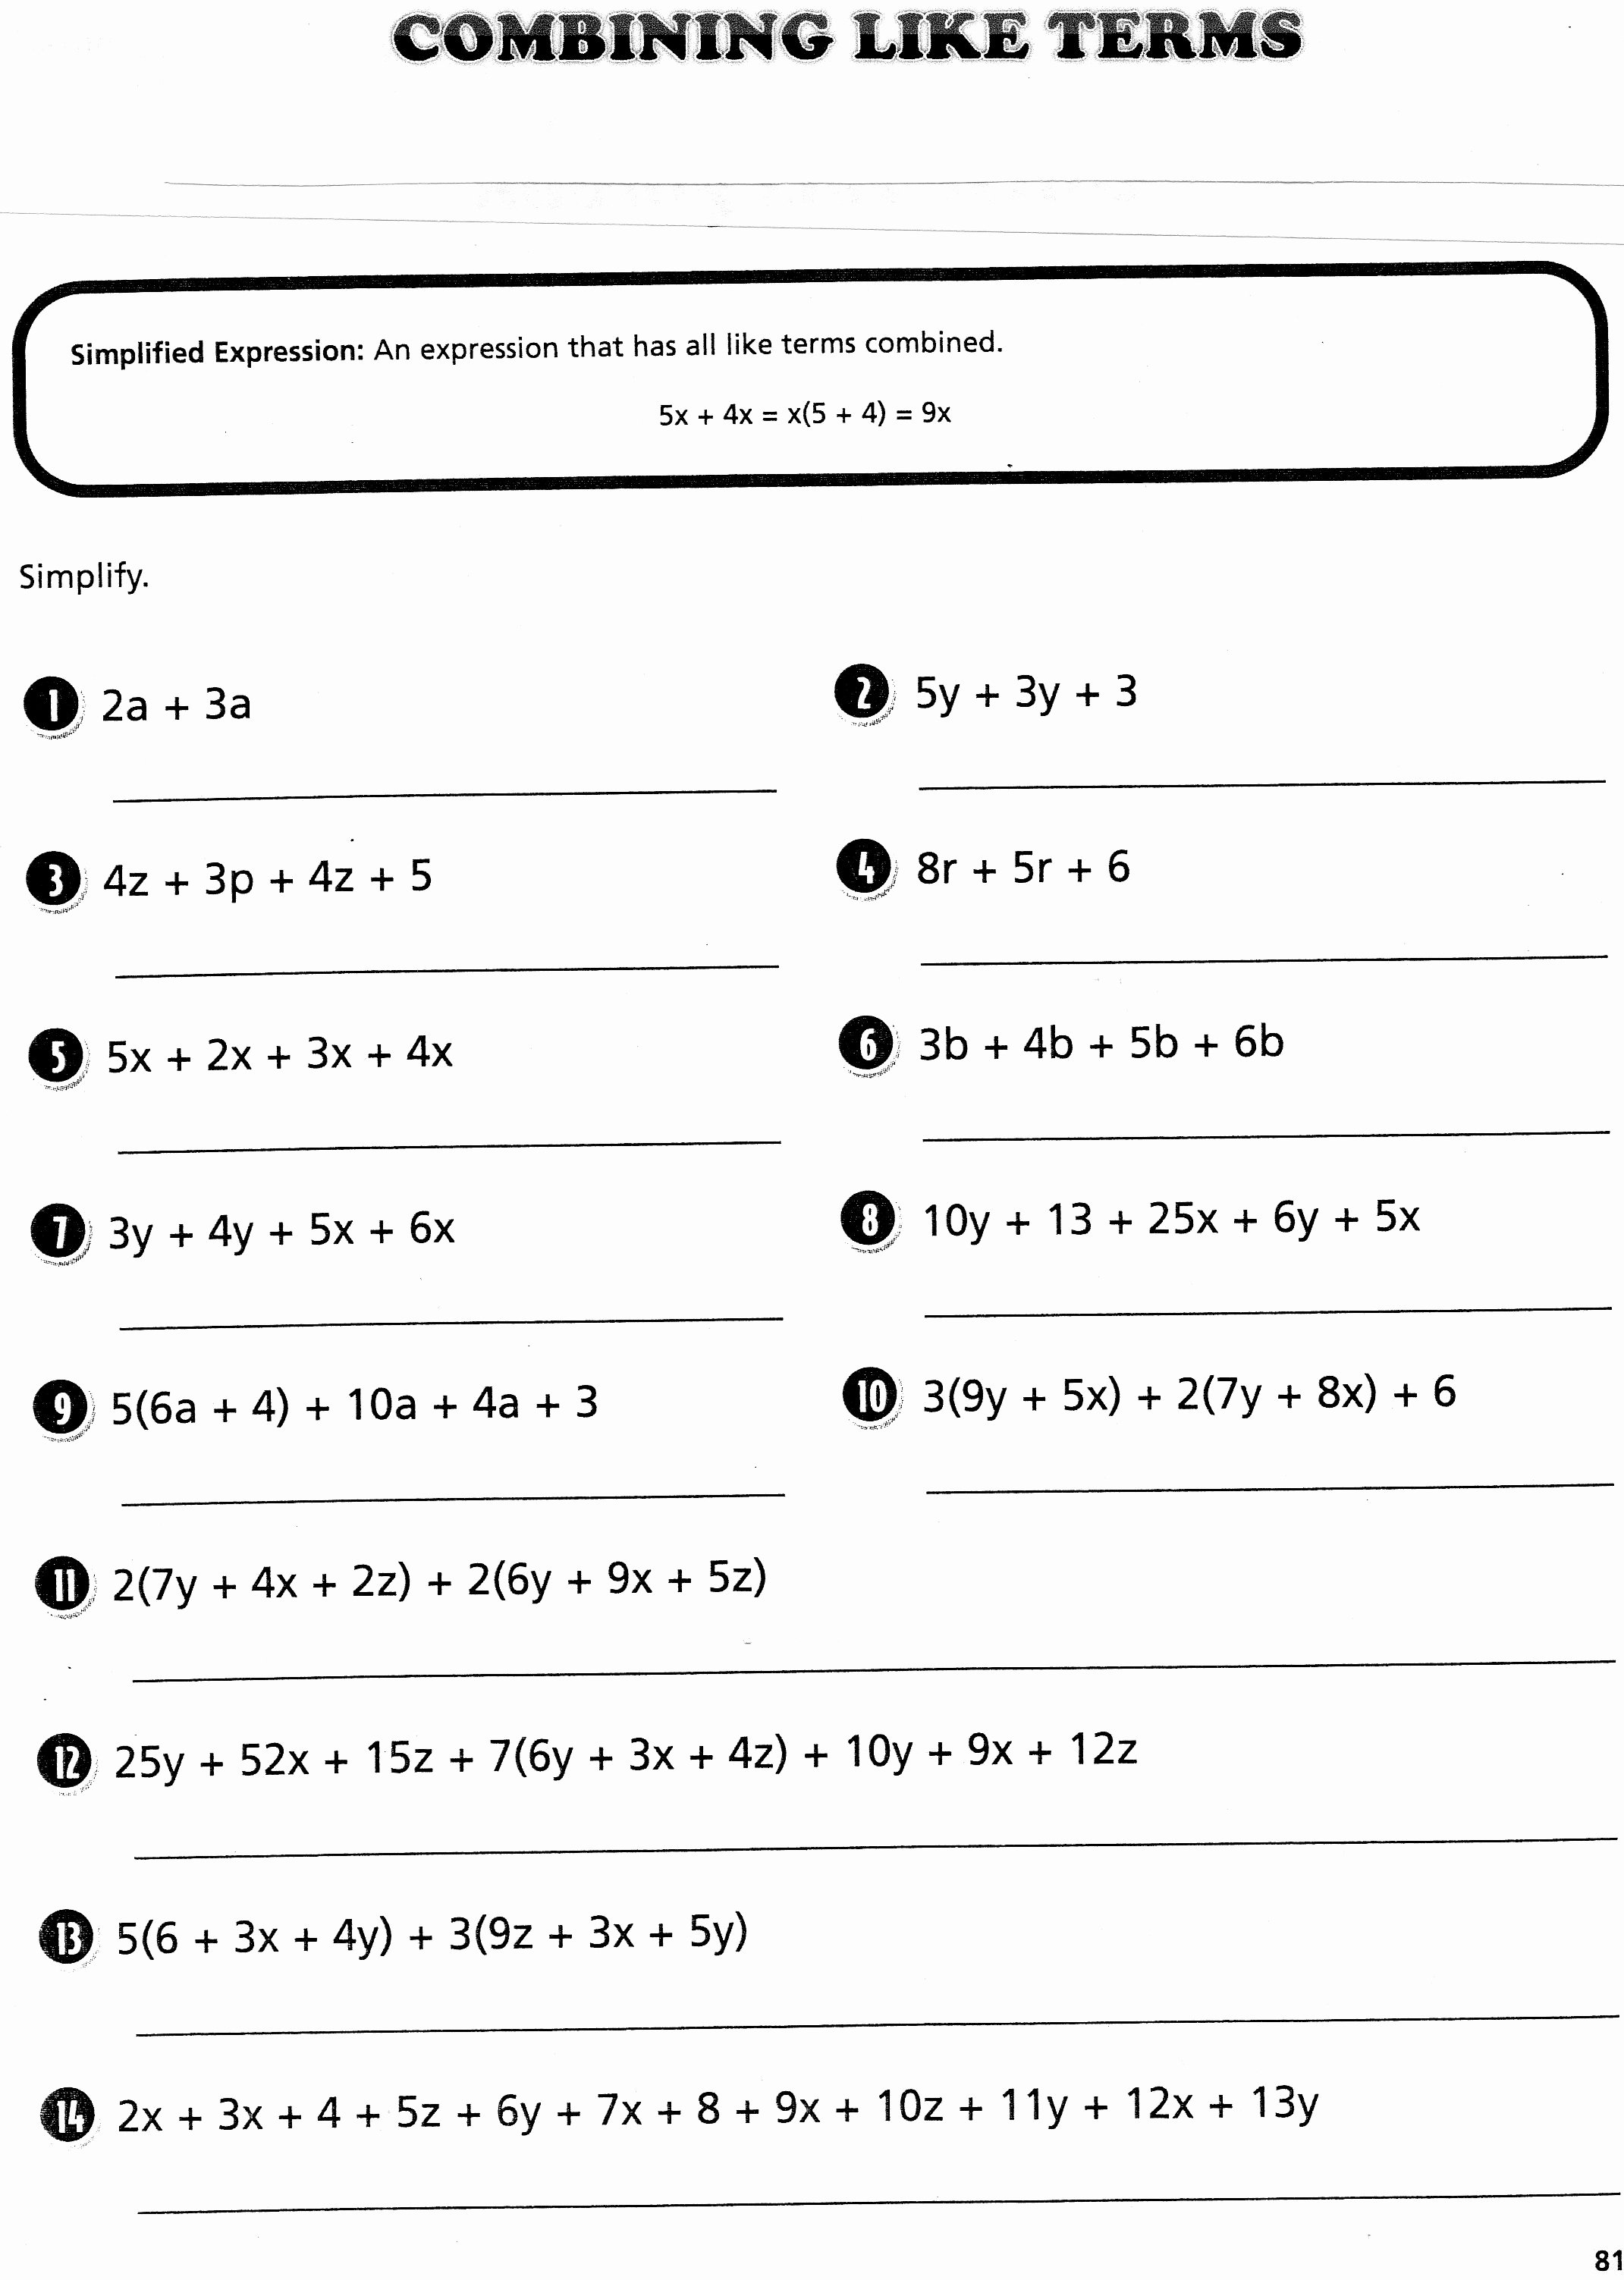 Combining Like Terms Equations Worksheet Luxury Algebra Worksheet New 269 Algebra Distribution Worksheet